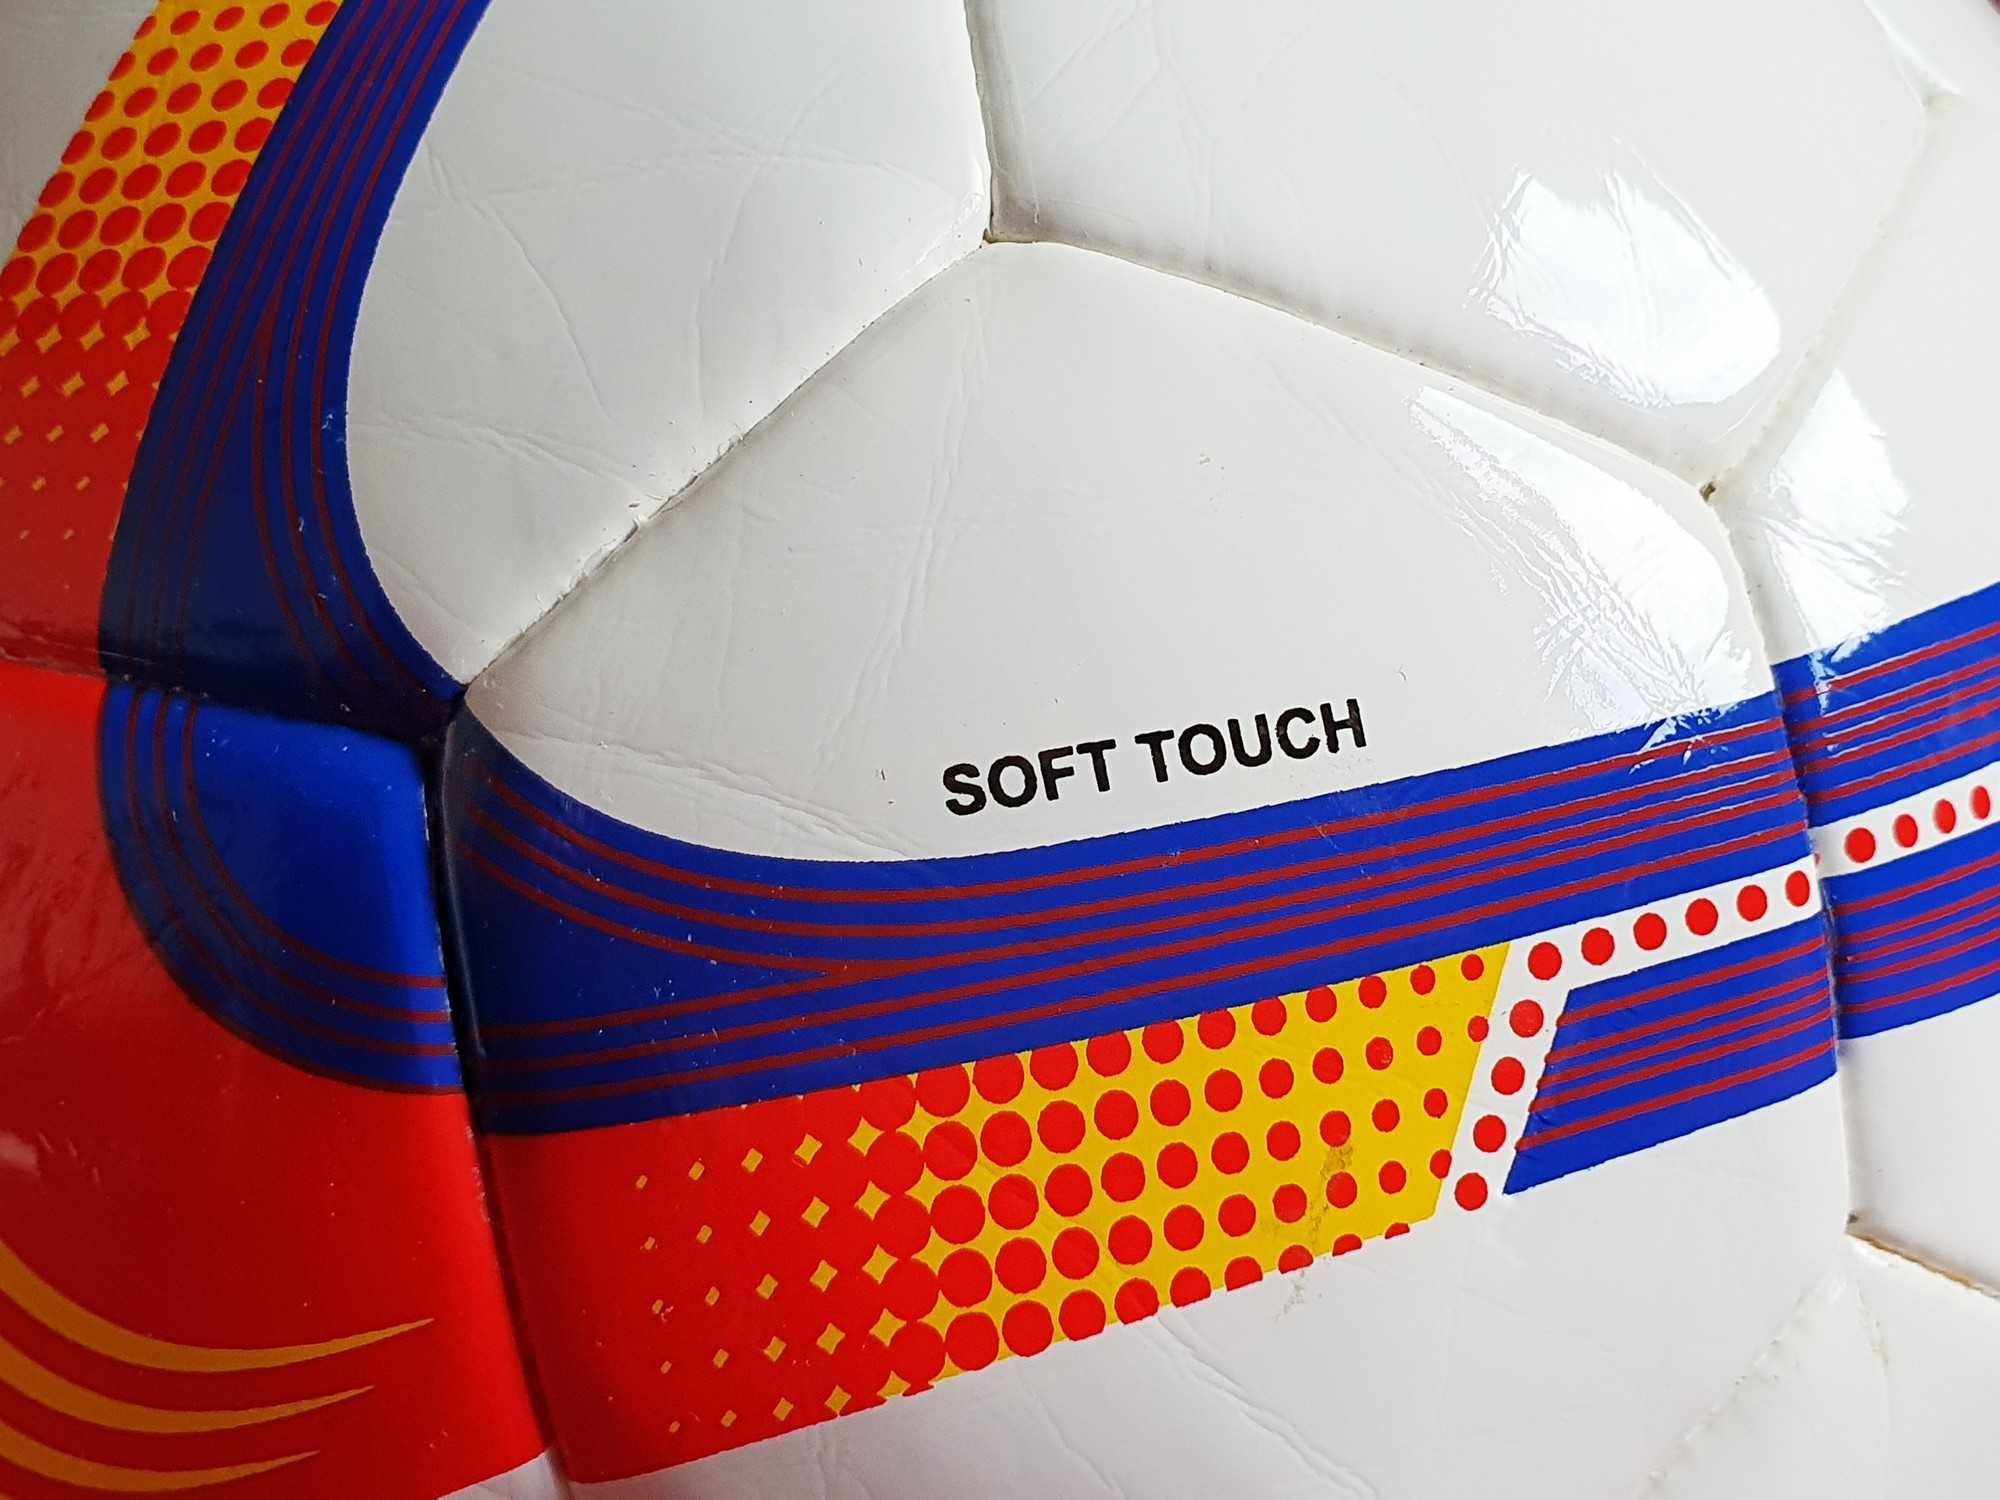 Minge de Fotbal -- Nouă -- Piele Ecologică -- Soft Touch